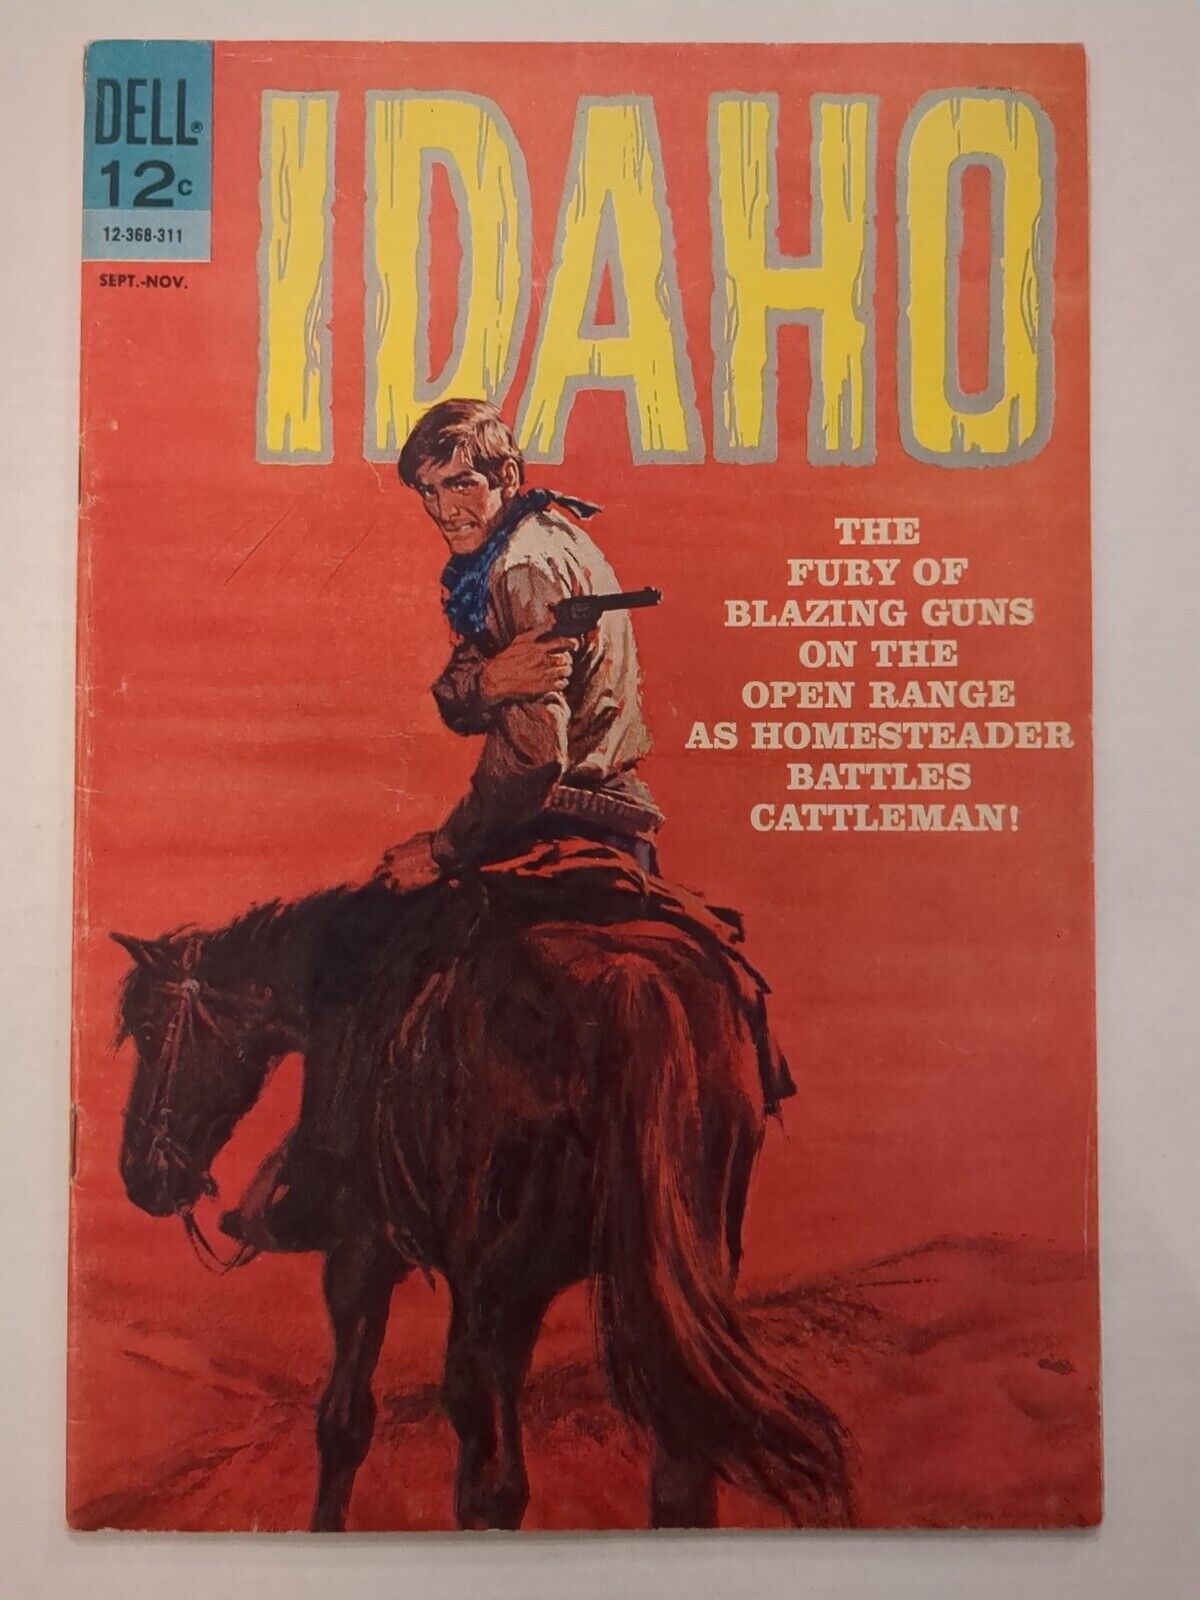 Idaho #2, Dell Comics, September - November 1963